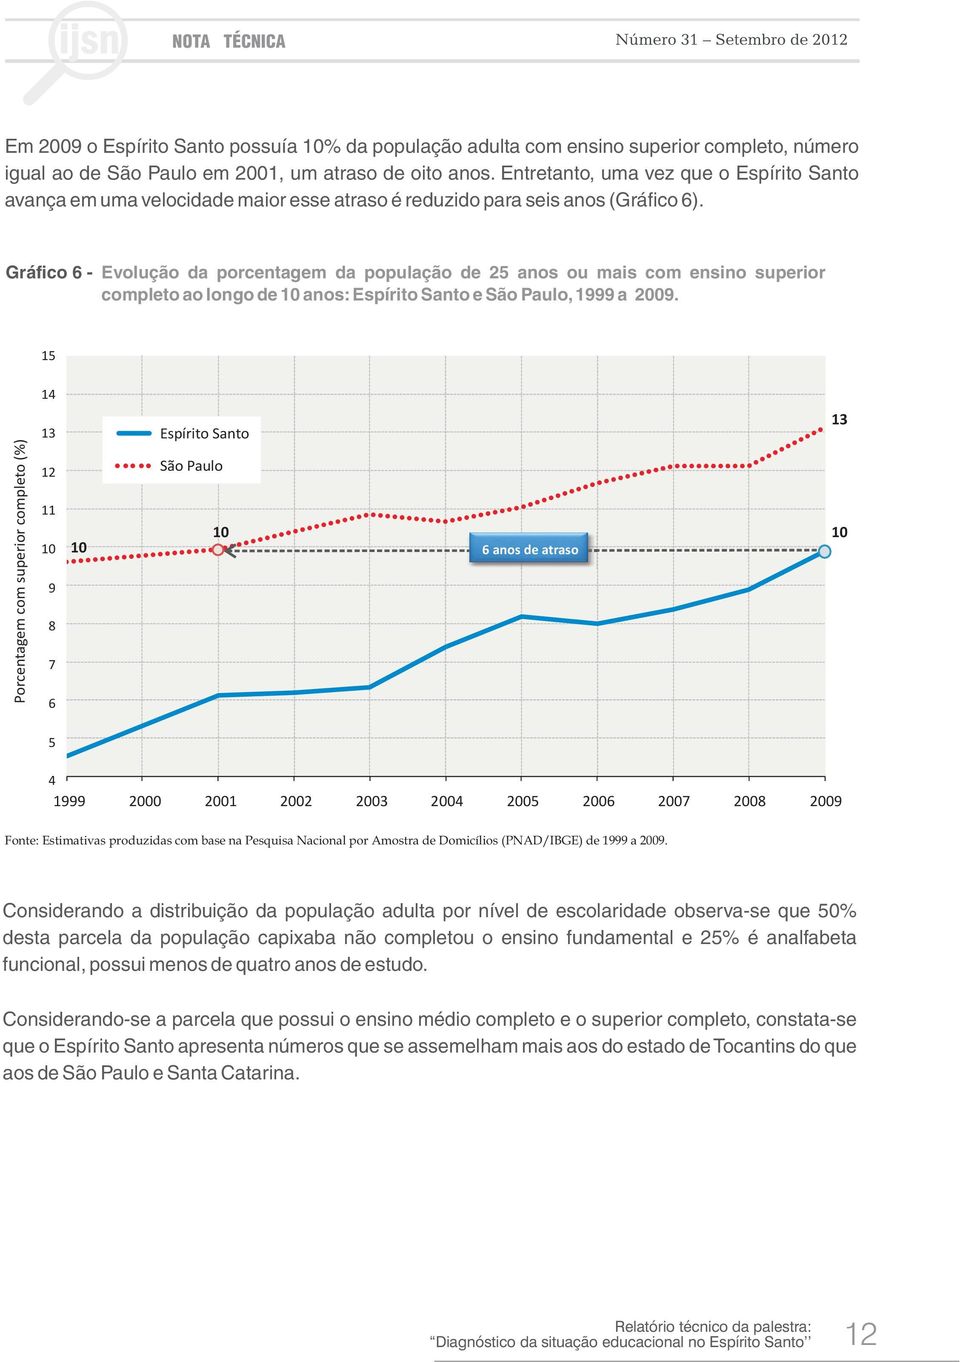 Gráfico 6 - Evolução da porcentagem da população de 25 anos ou mais com ensino superior completo ao longo de anos: e, 1999 a 29.